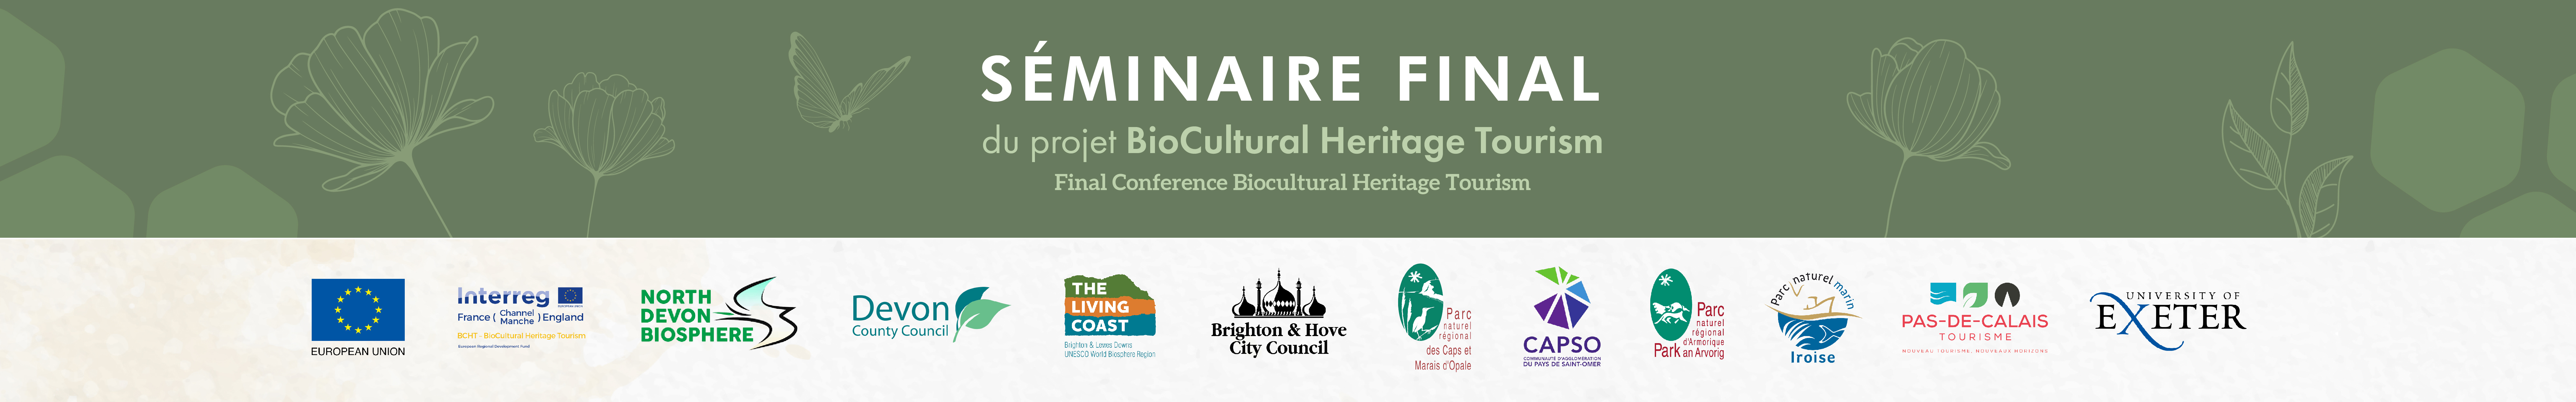 SÉMINAIRE FINAL du projet BioCultural Heritage Tourism | Final Conference Biocultural Heritage Tourism - 13 & 14 octobre 2021